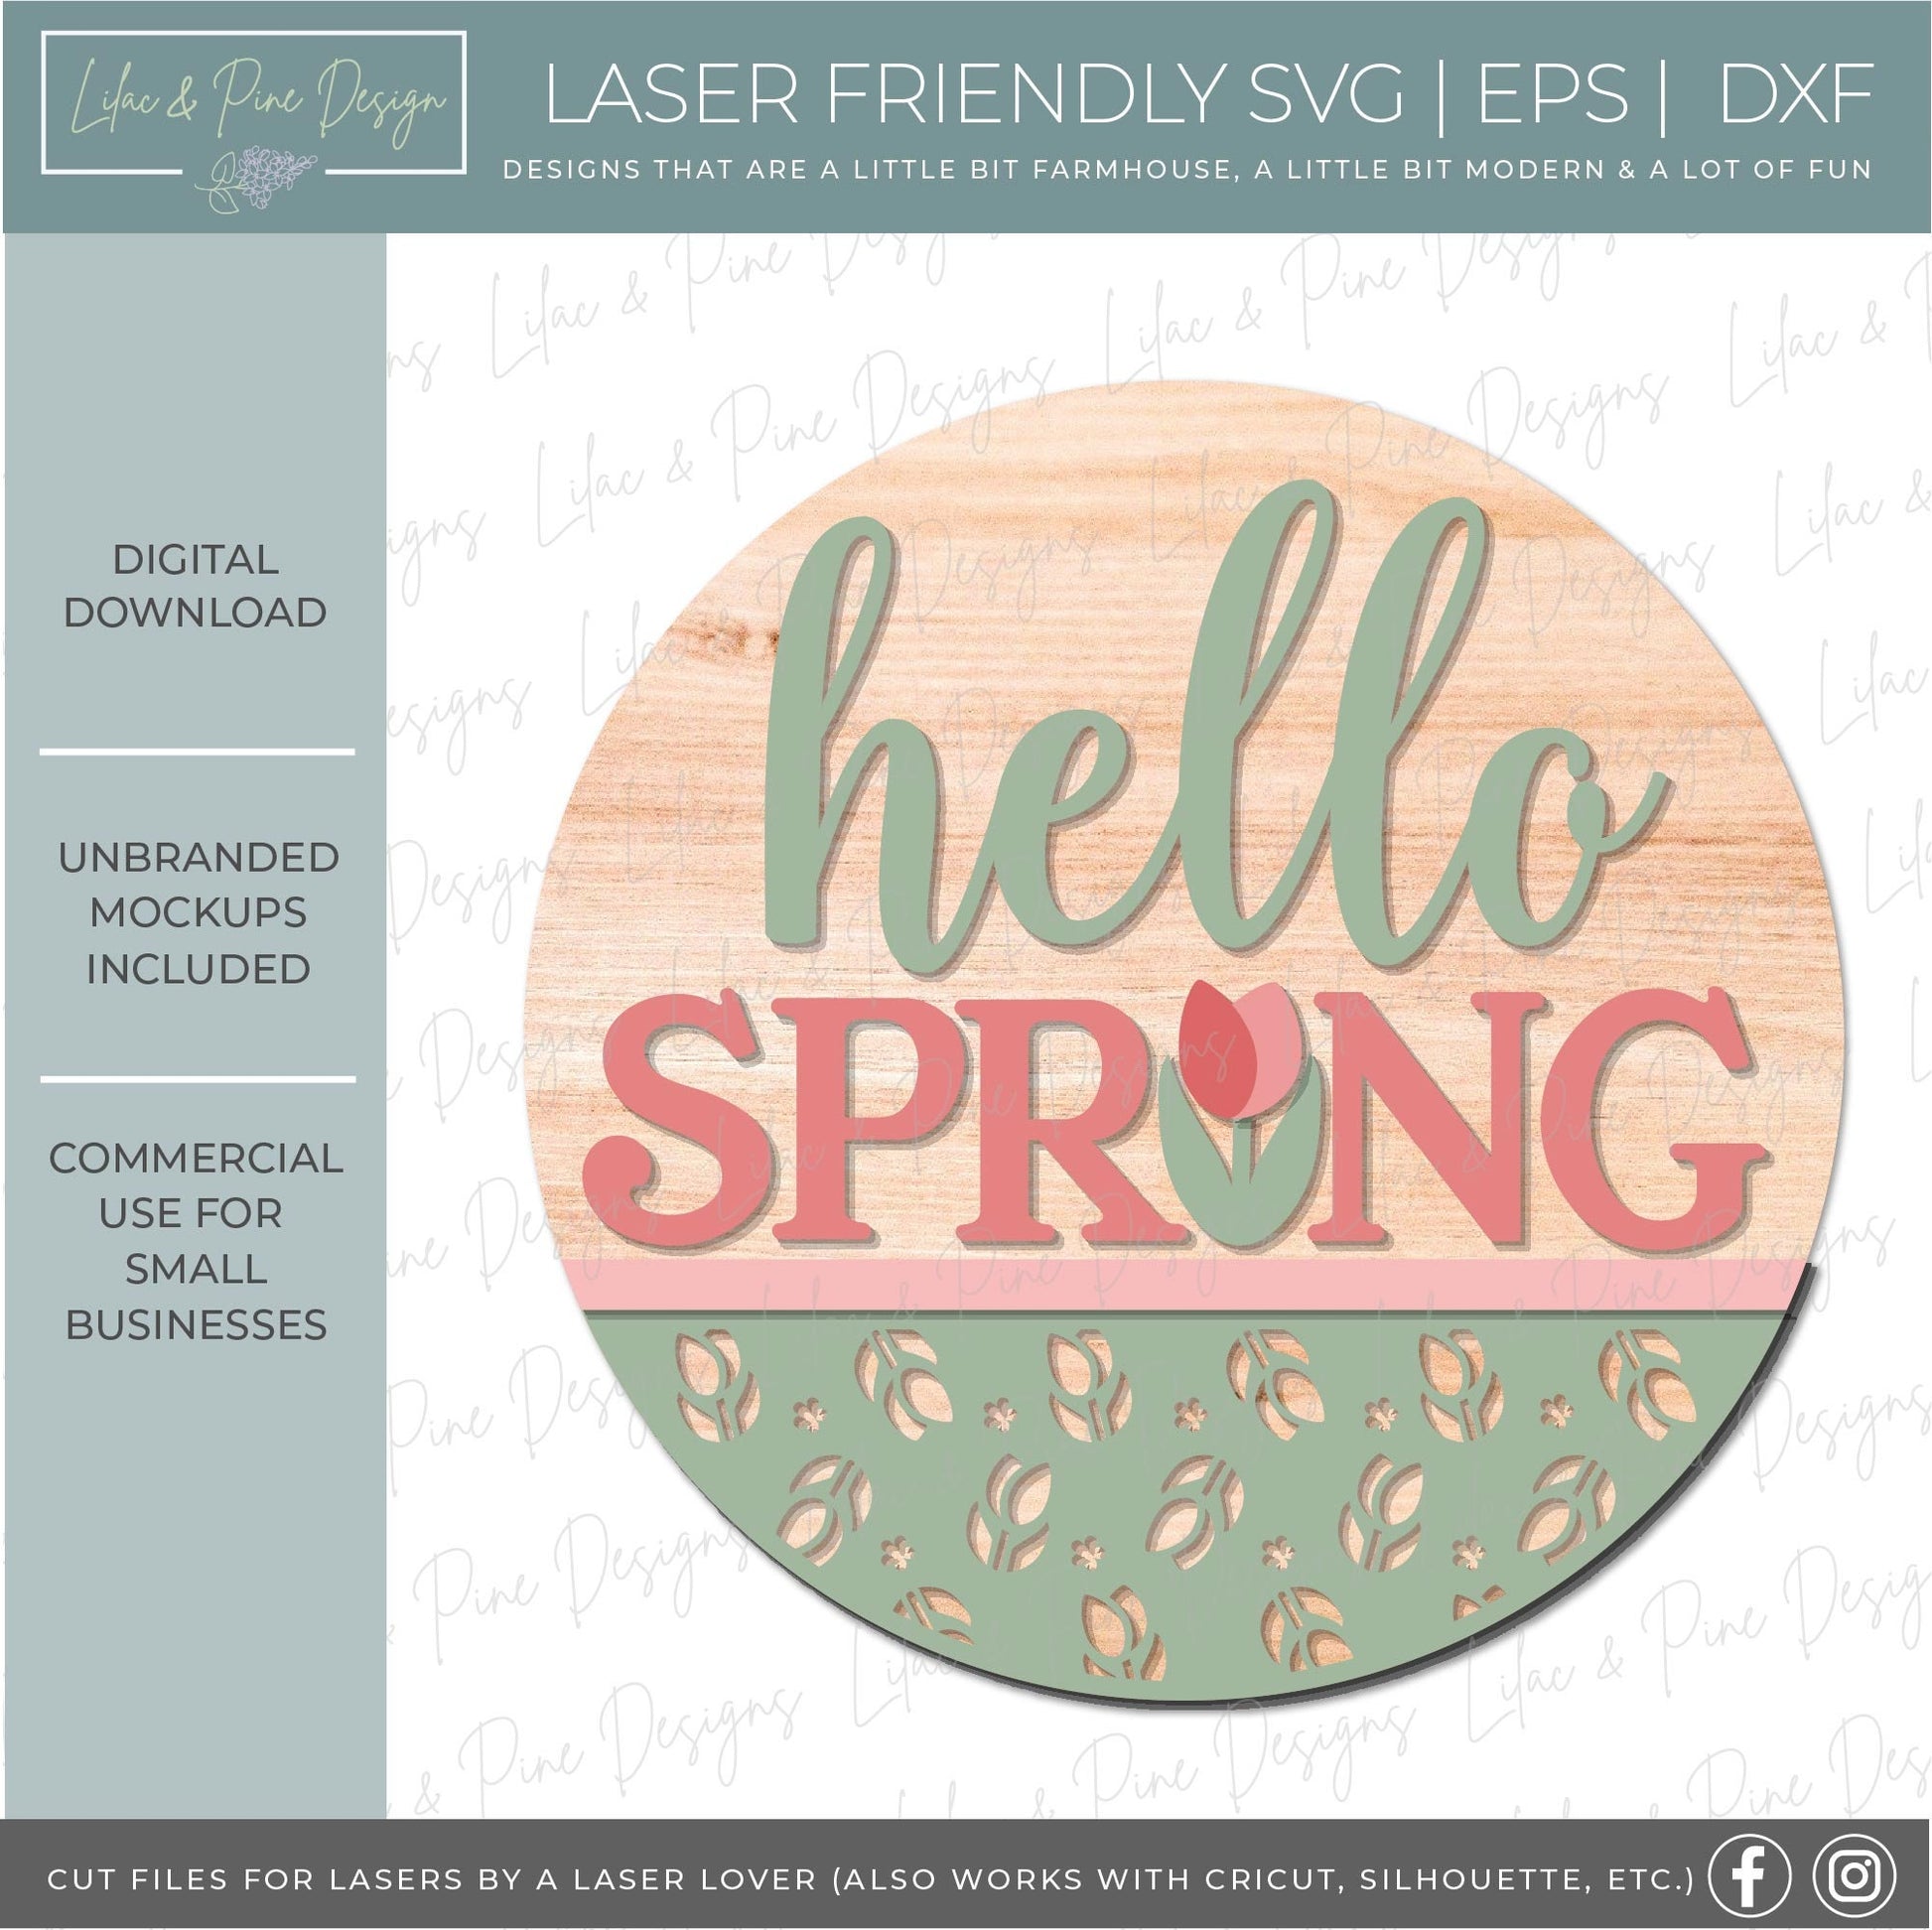 hello spring SVG, tulip door hanger, spring flower Welcome SVG, floral decor, spring laser template, Glowforge SVG, laser cut file